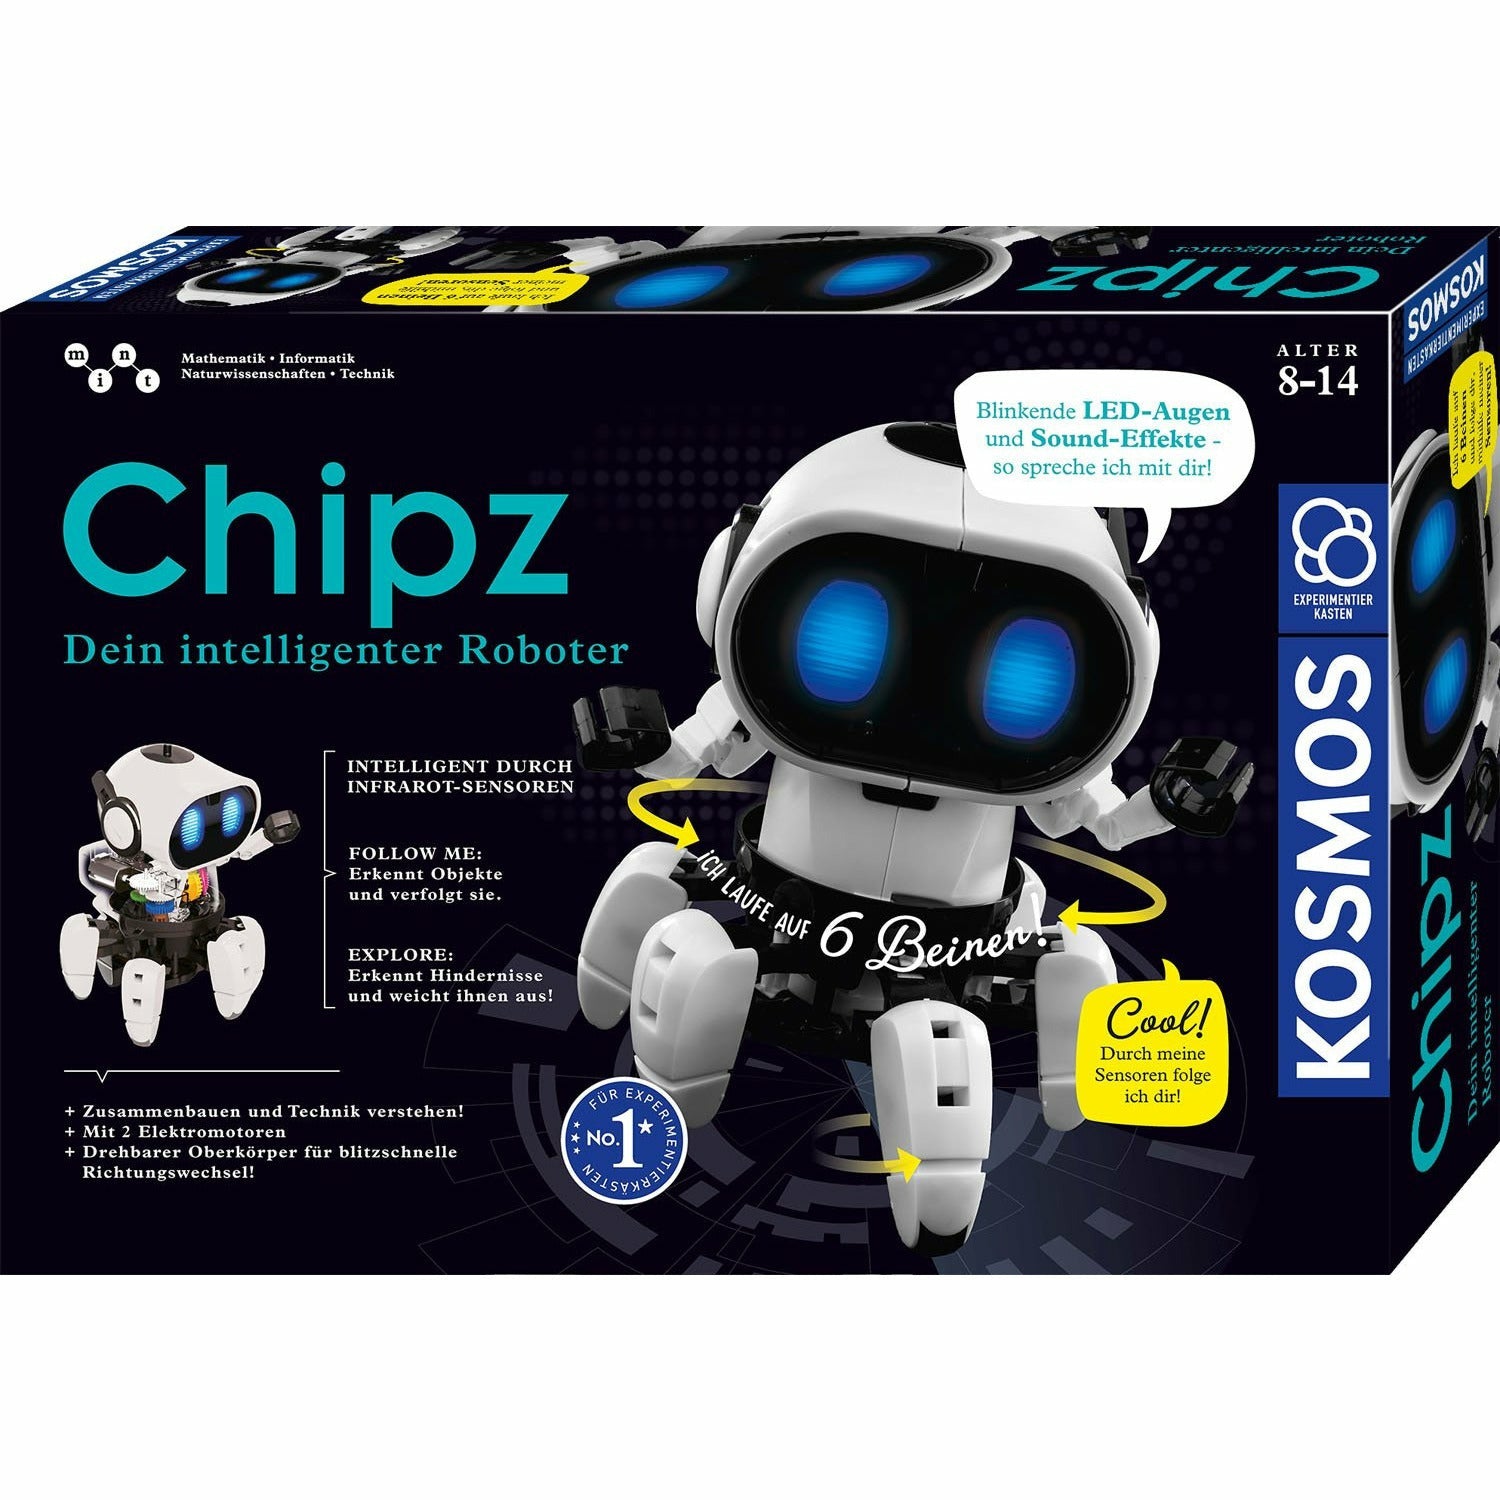 KOSMOS | Chipz - Dein intelligenter Roboter